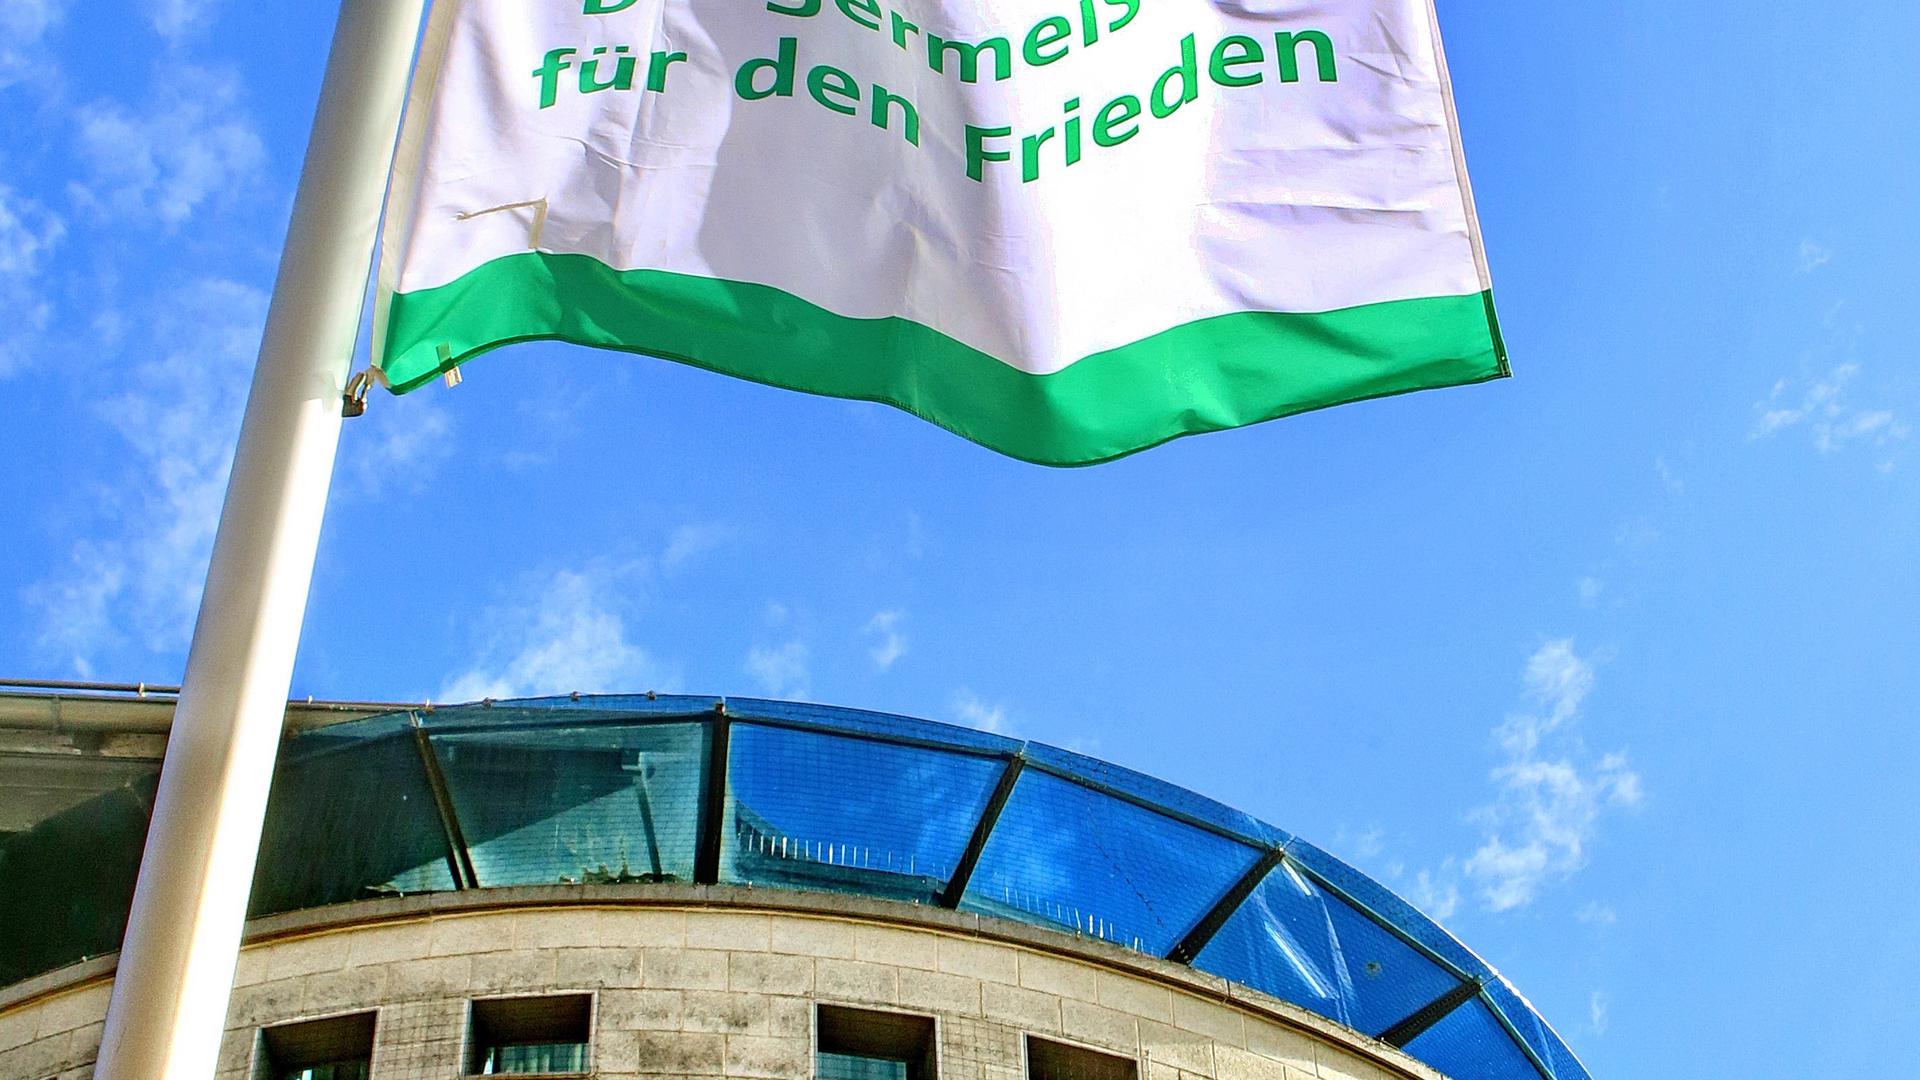 Protest gegen Atomwaffen: Am 8. Juli hisste Karlsruhe vor dem Neuen Ständehaus die Fahne des globalen Netzwerks „Mayors for Peace”, um ein Zeichen für eine friedliche Welt zu setzen.